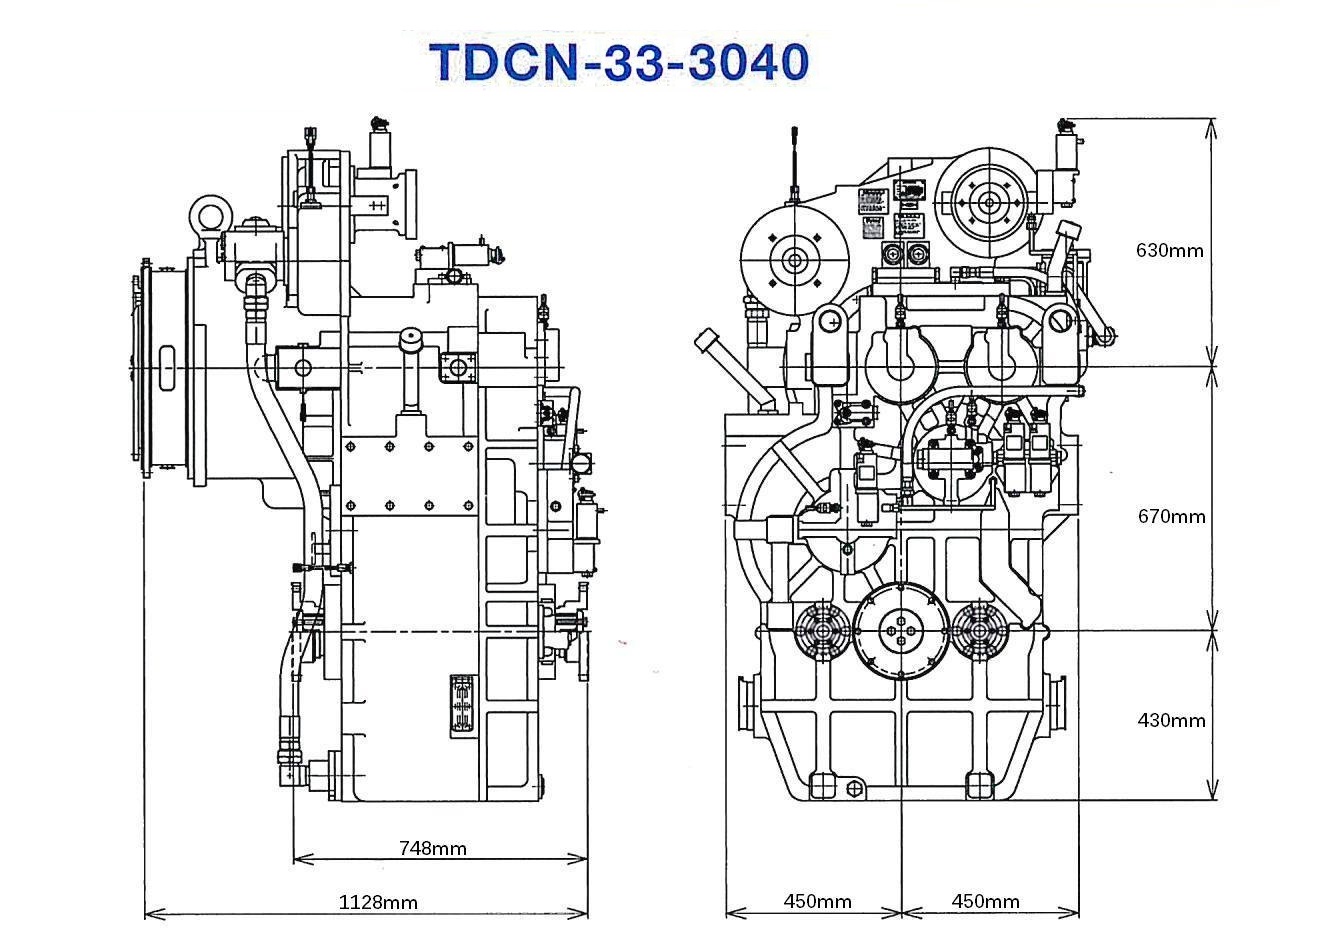 TDCN-33-3040